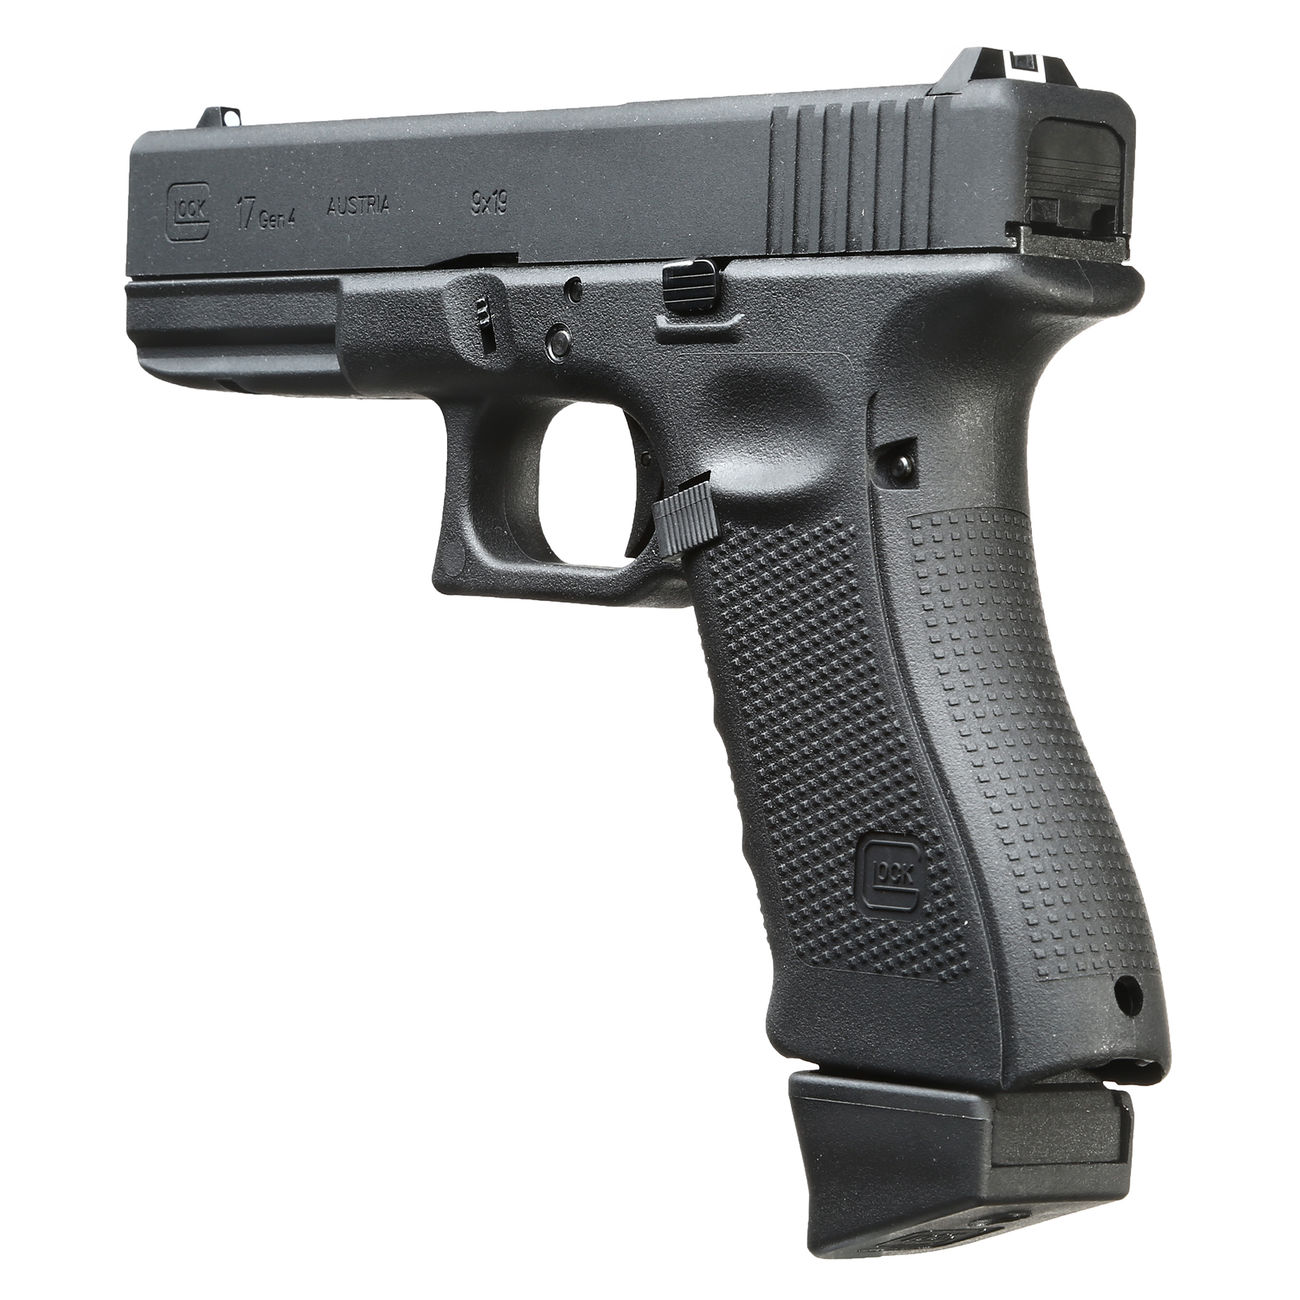 VFC Glock 17 Gen. 4 mit Metallschlitten CO2BB 6mm BB schwarz Bild 1